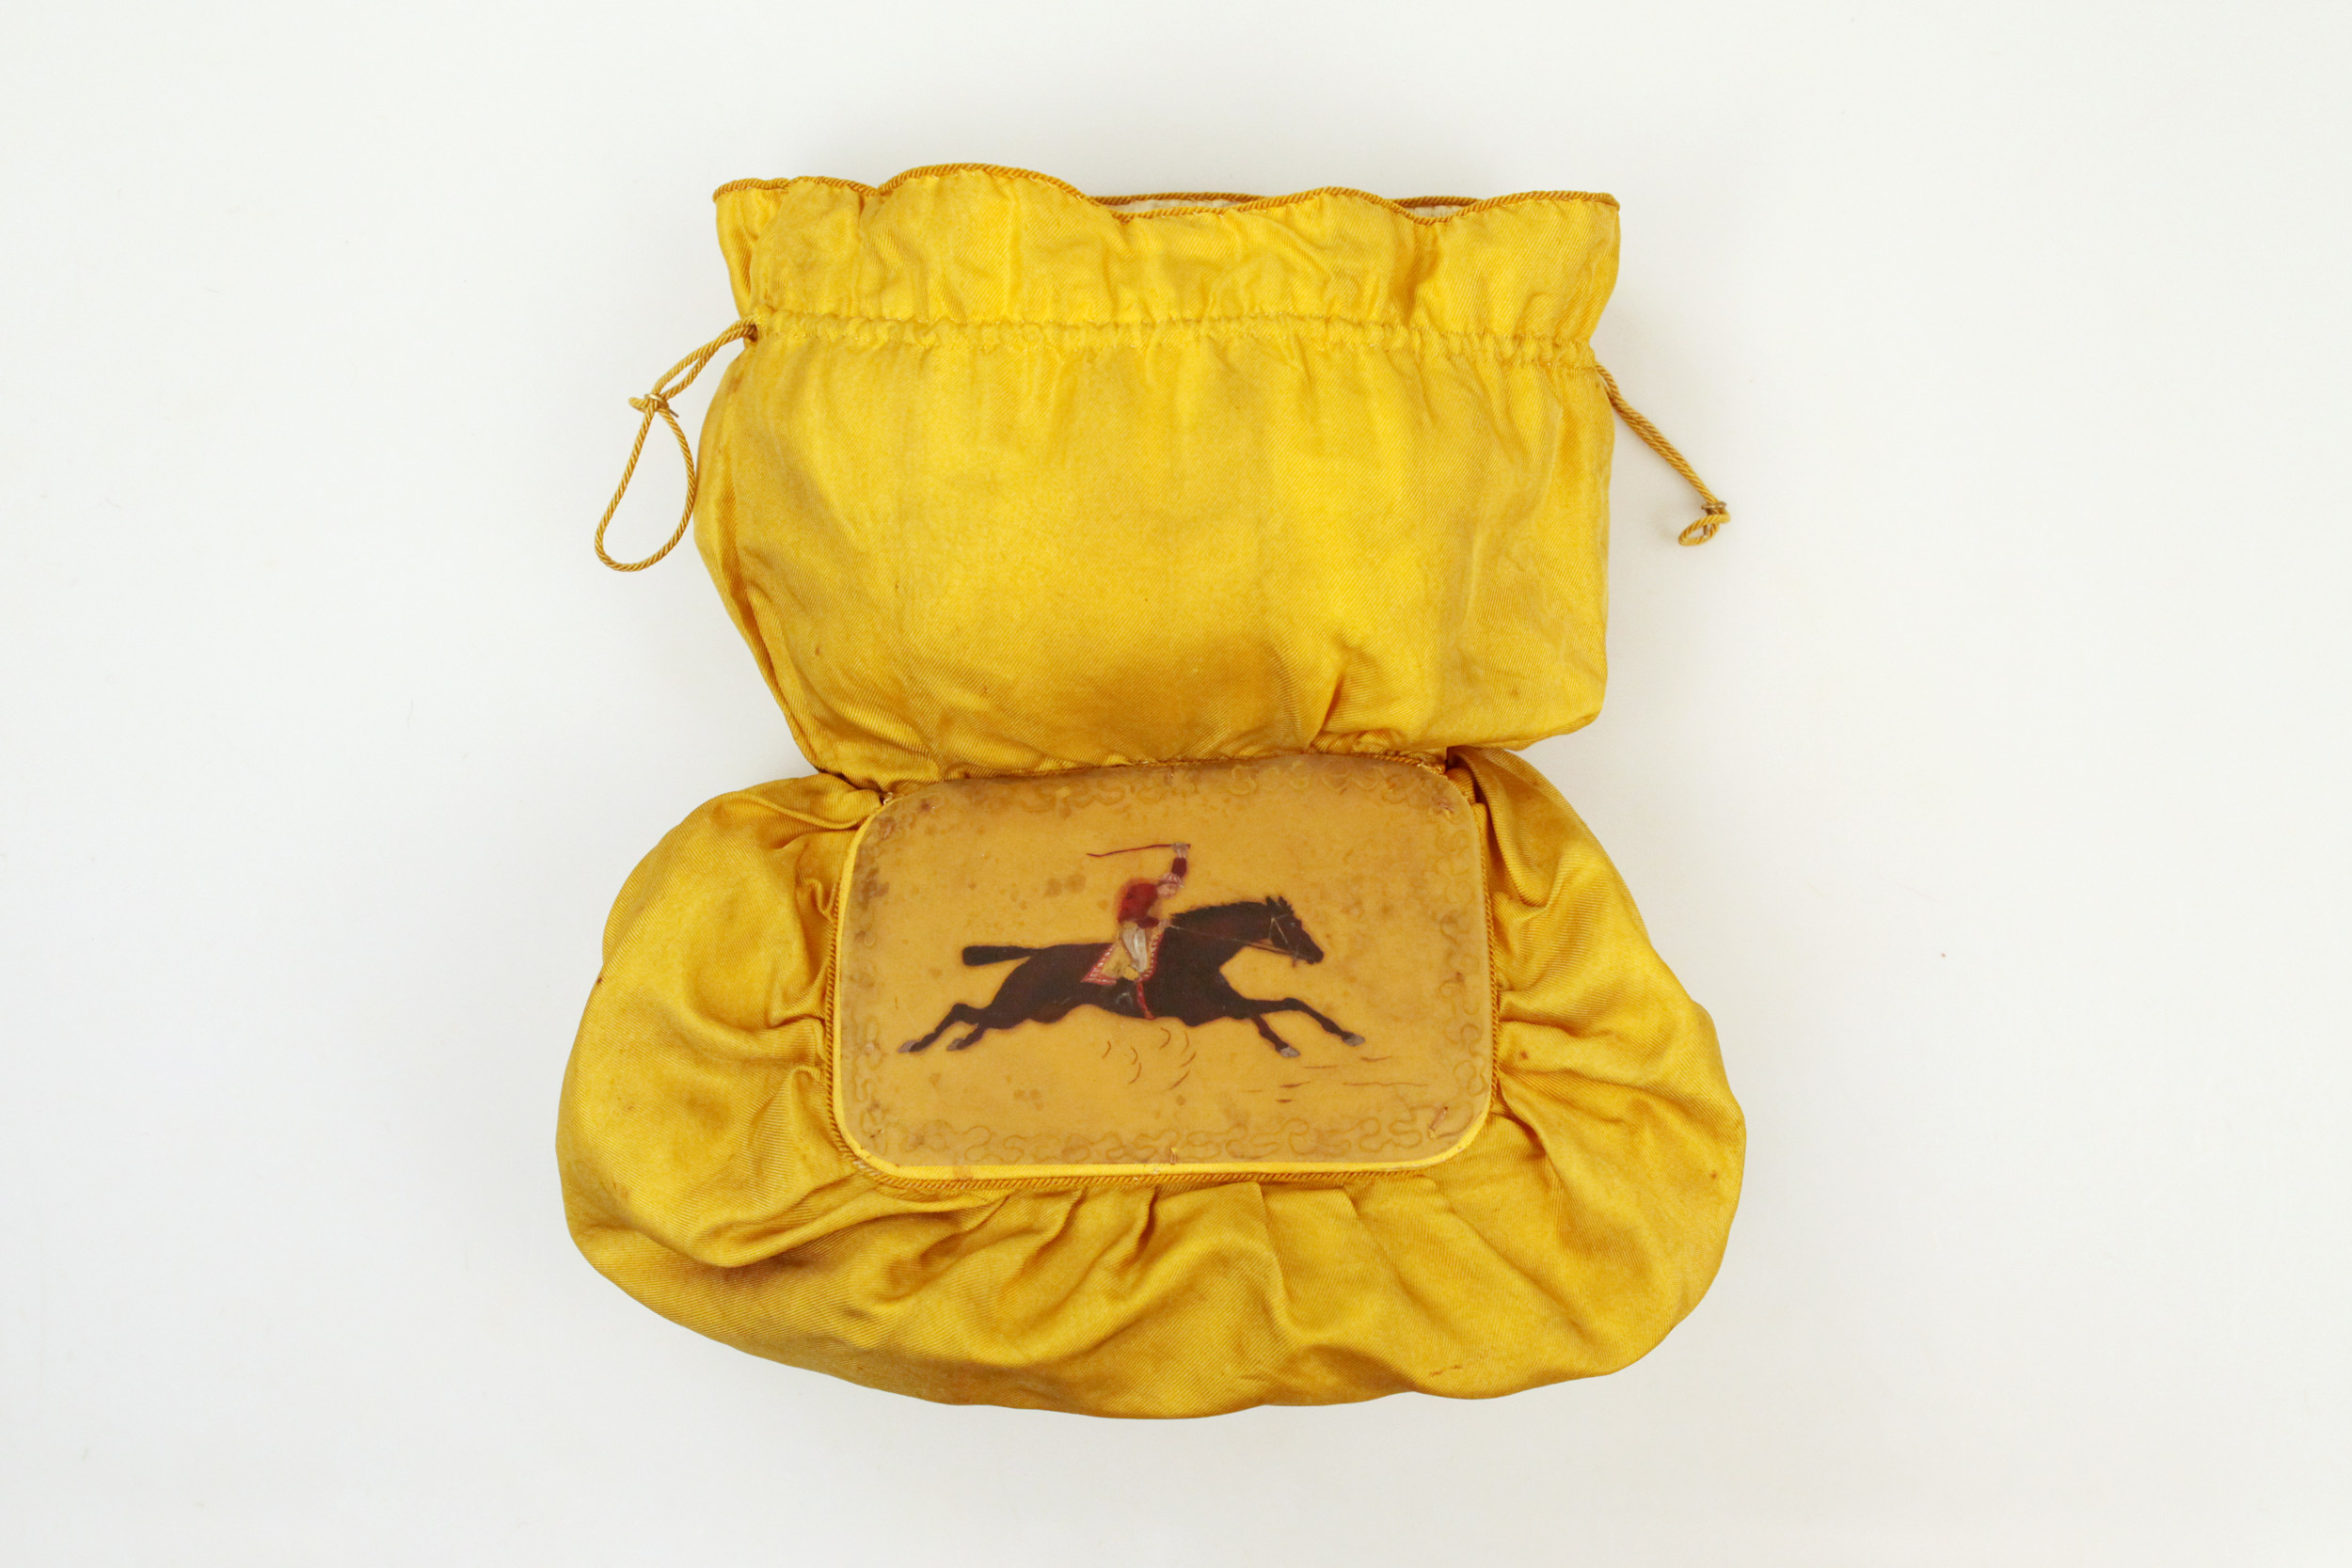 1981 silk purse